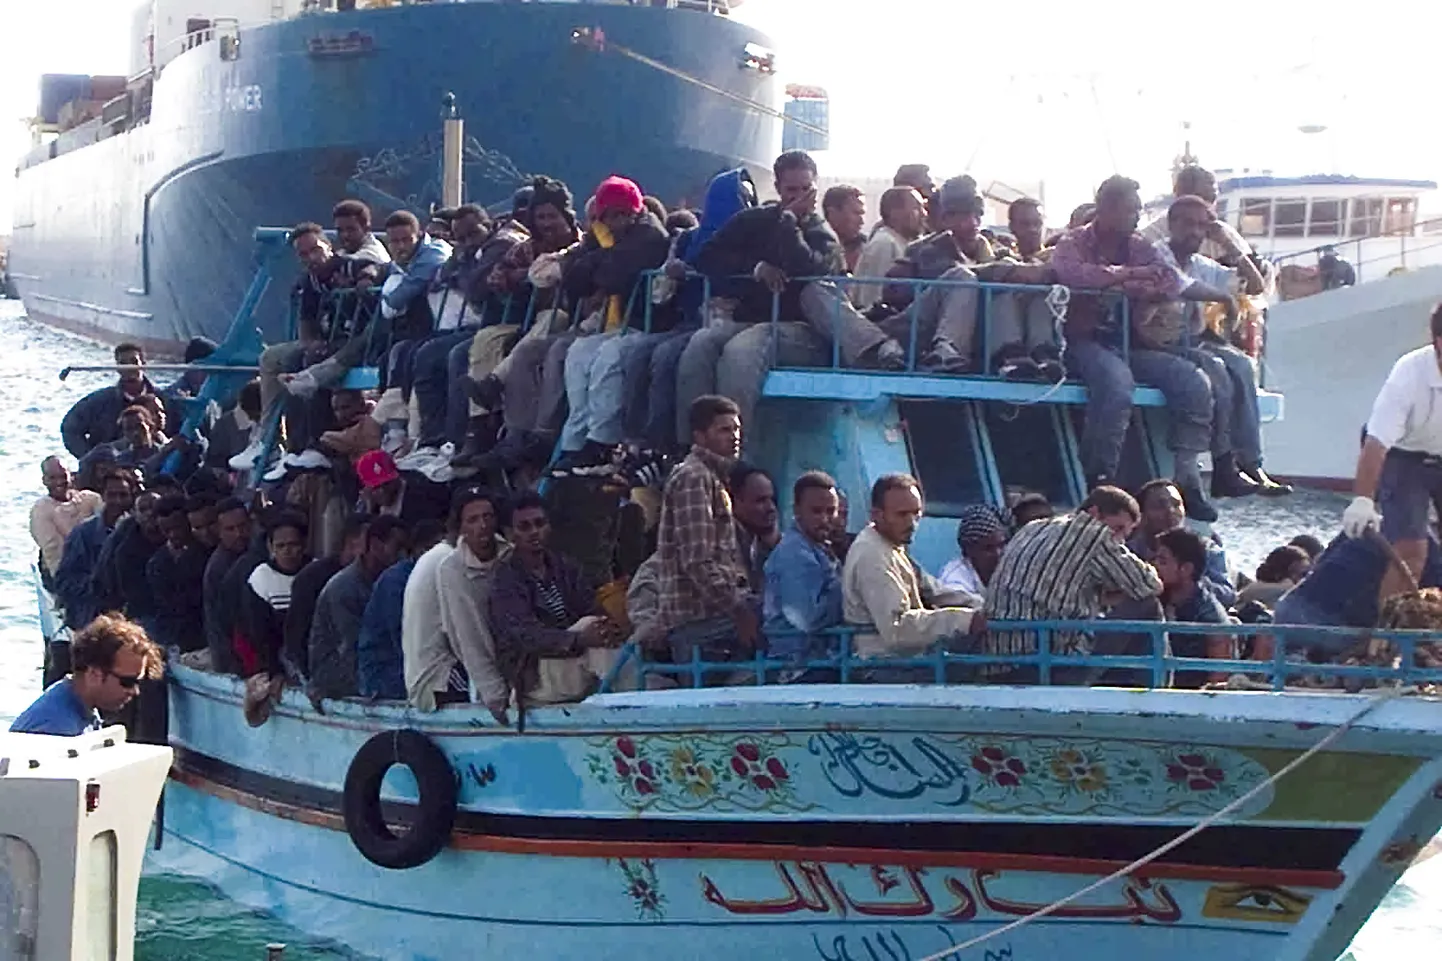 Migrandid saabuvad Itaaliasse. Arvatavalt on need 32 inimest pärit Egiptusest, paadi tabasid Itaalia võimud.